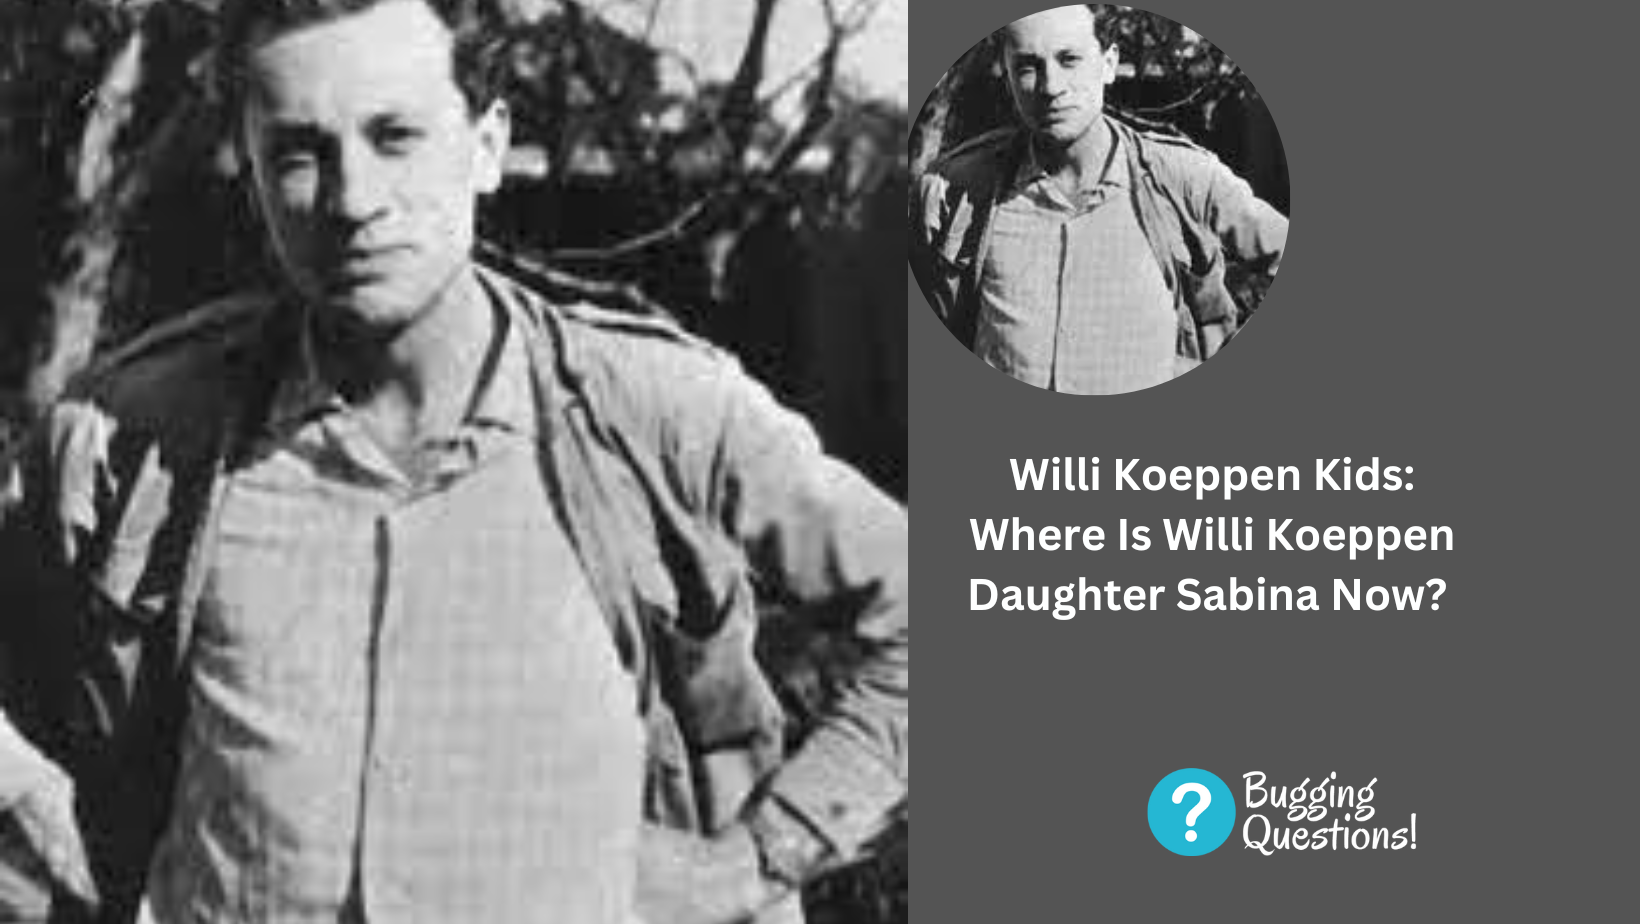 Willi Koeppen Kids: Where Is Willi Koeppen Daughter Sabina Now?